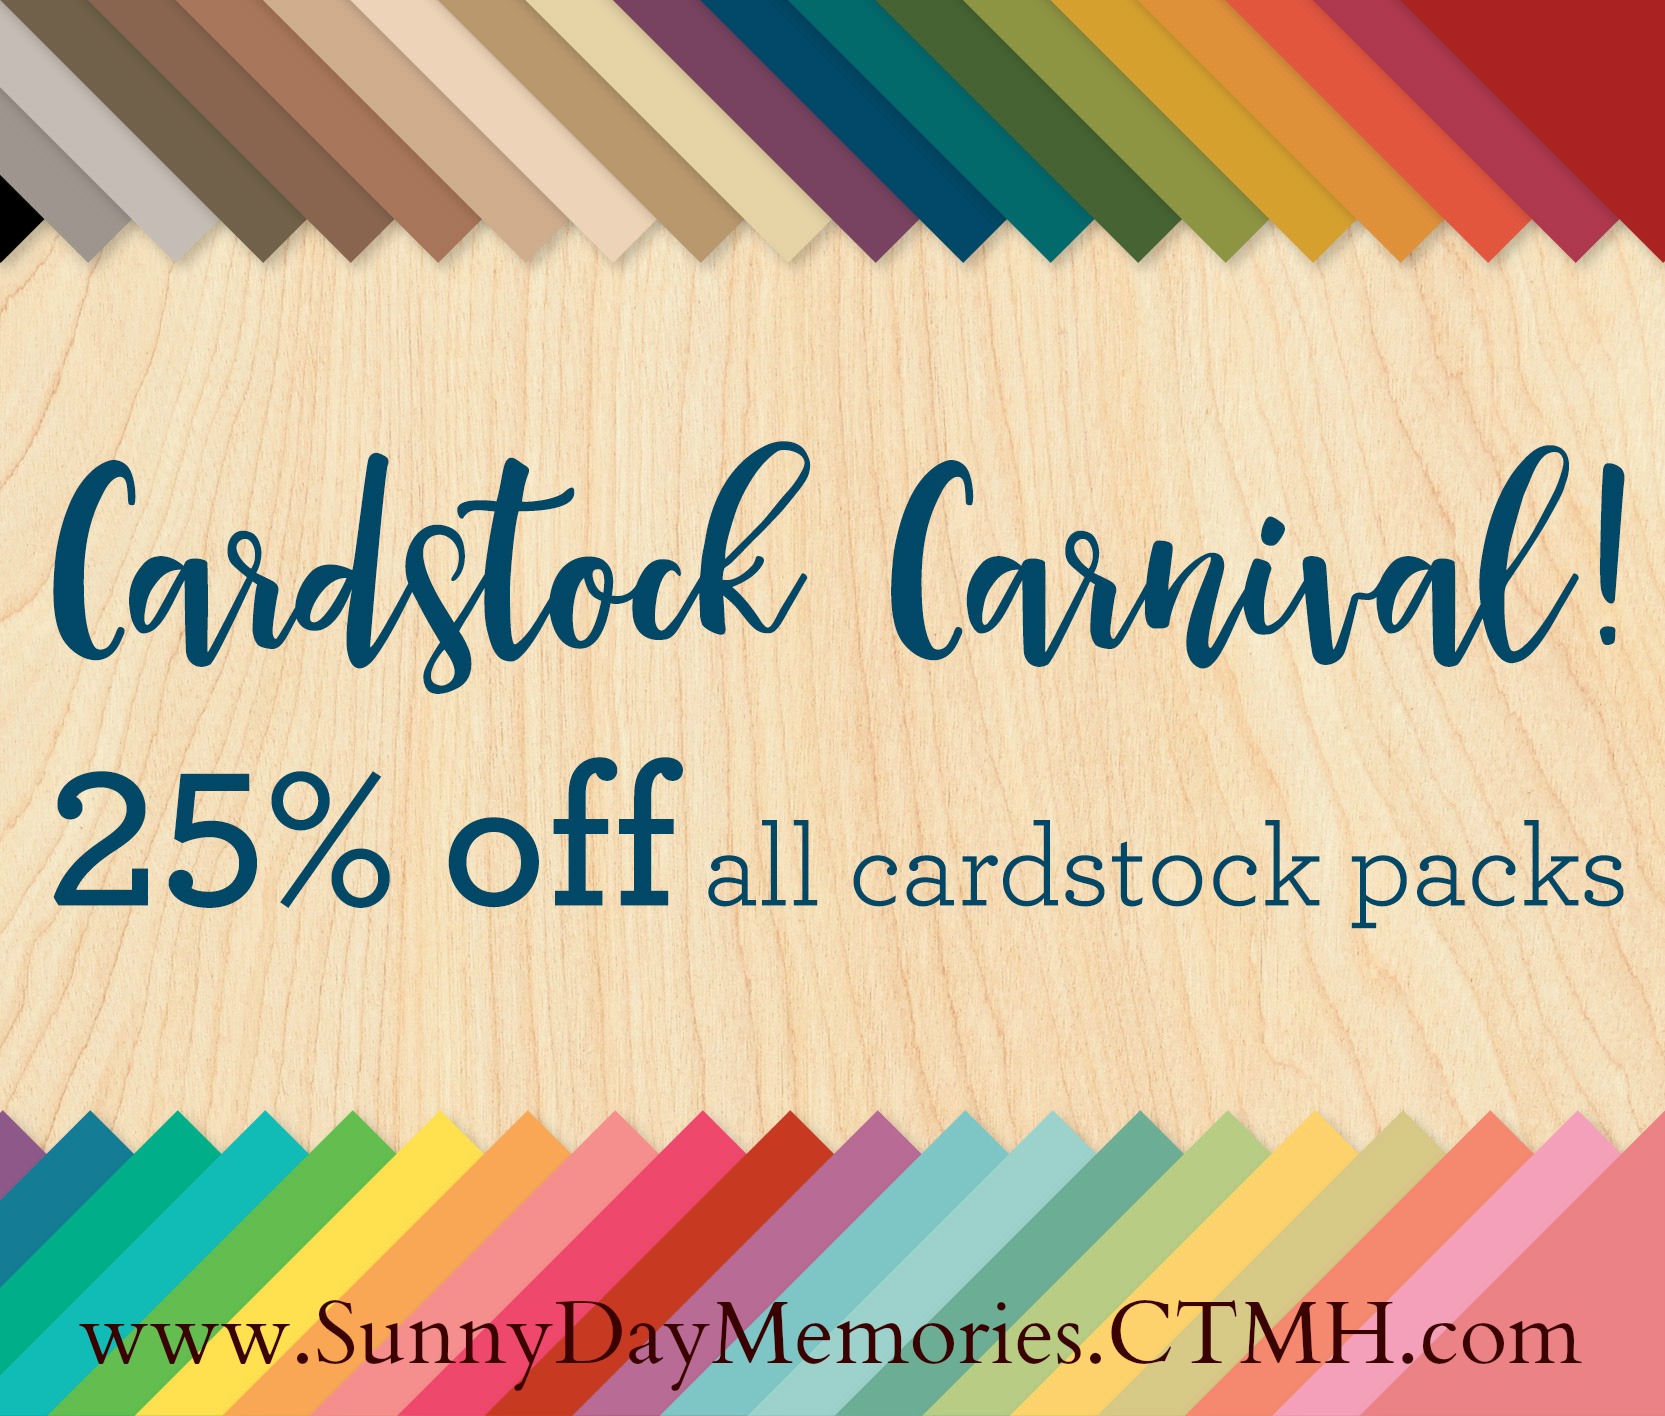 CTMH Cardstock Carnival